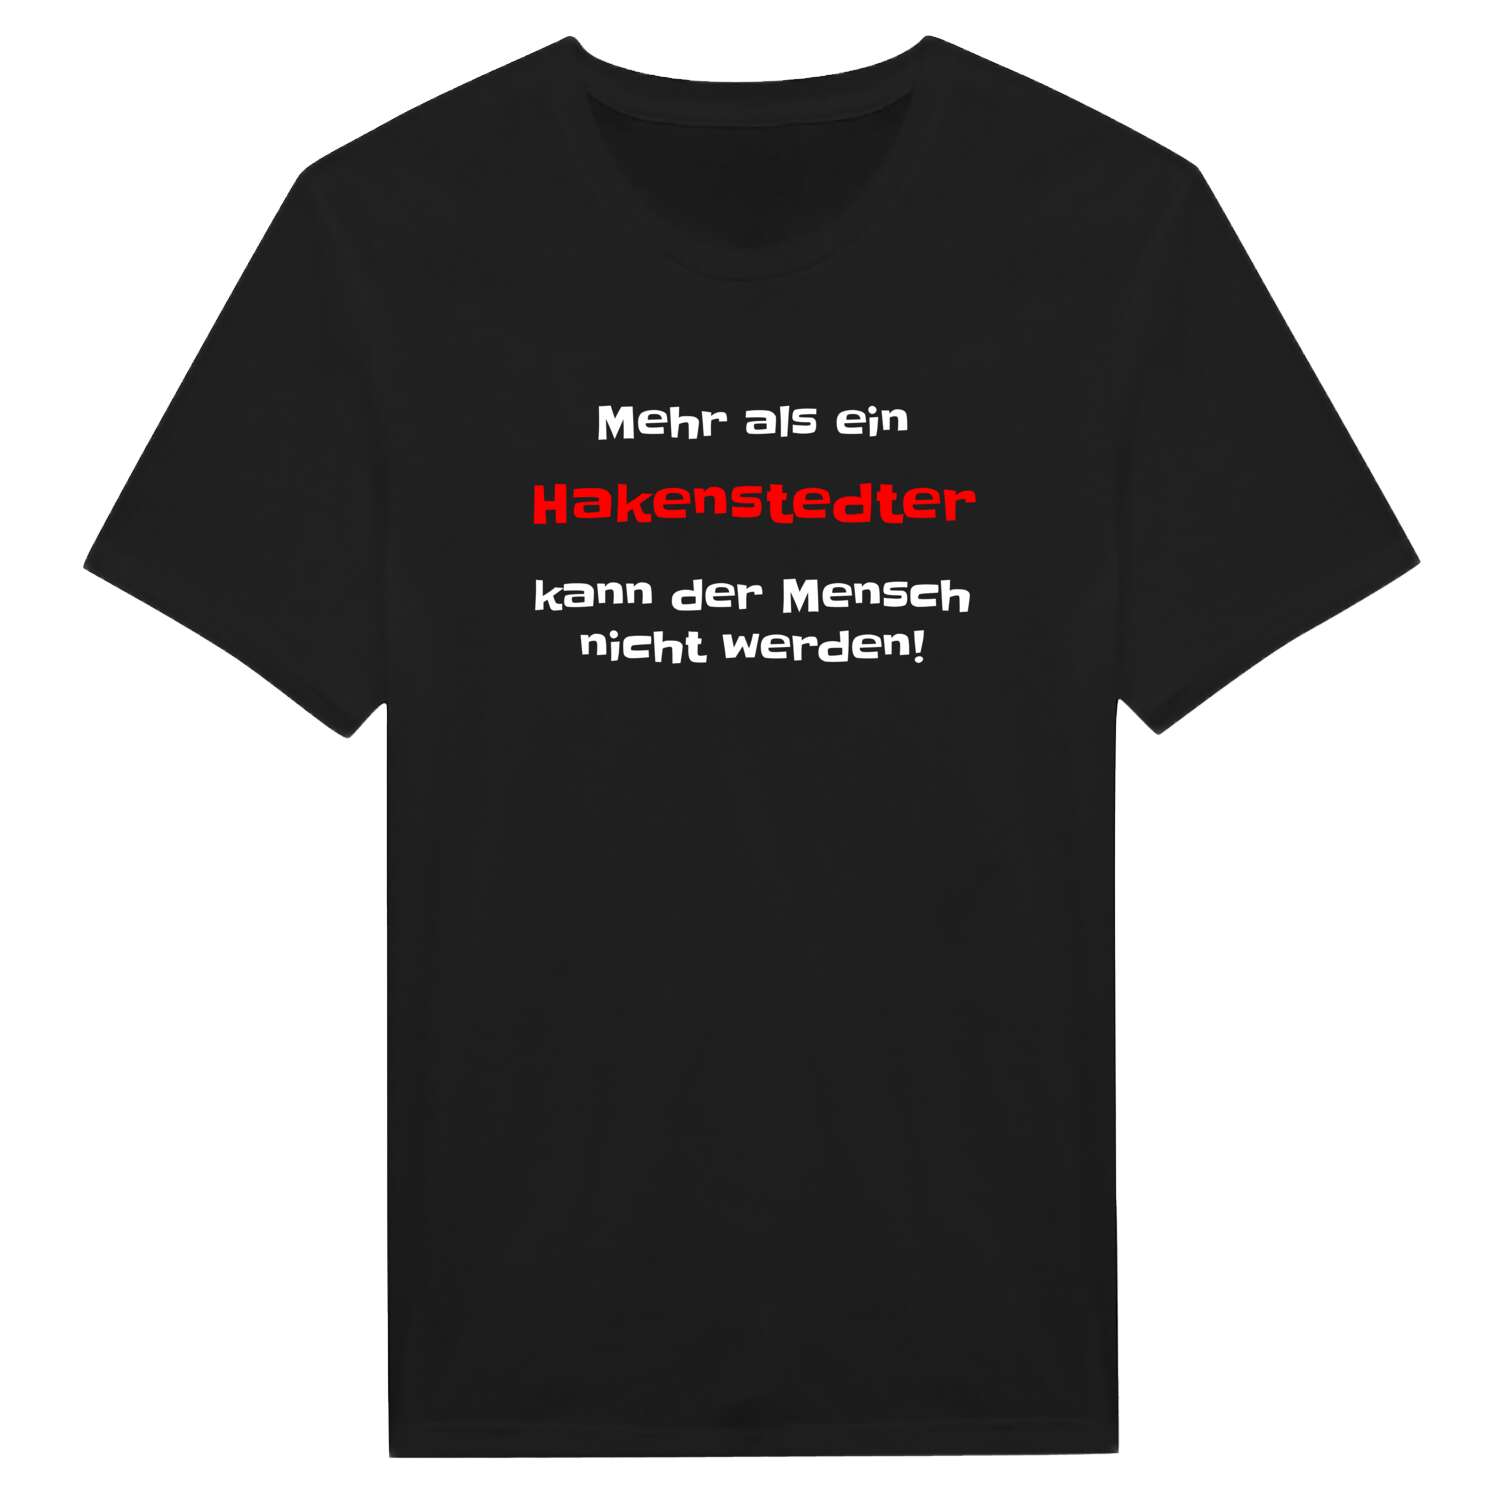 Hakenstedt T-Shirt »Mehr als ein«